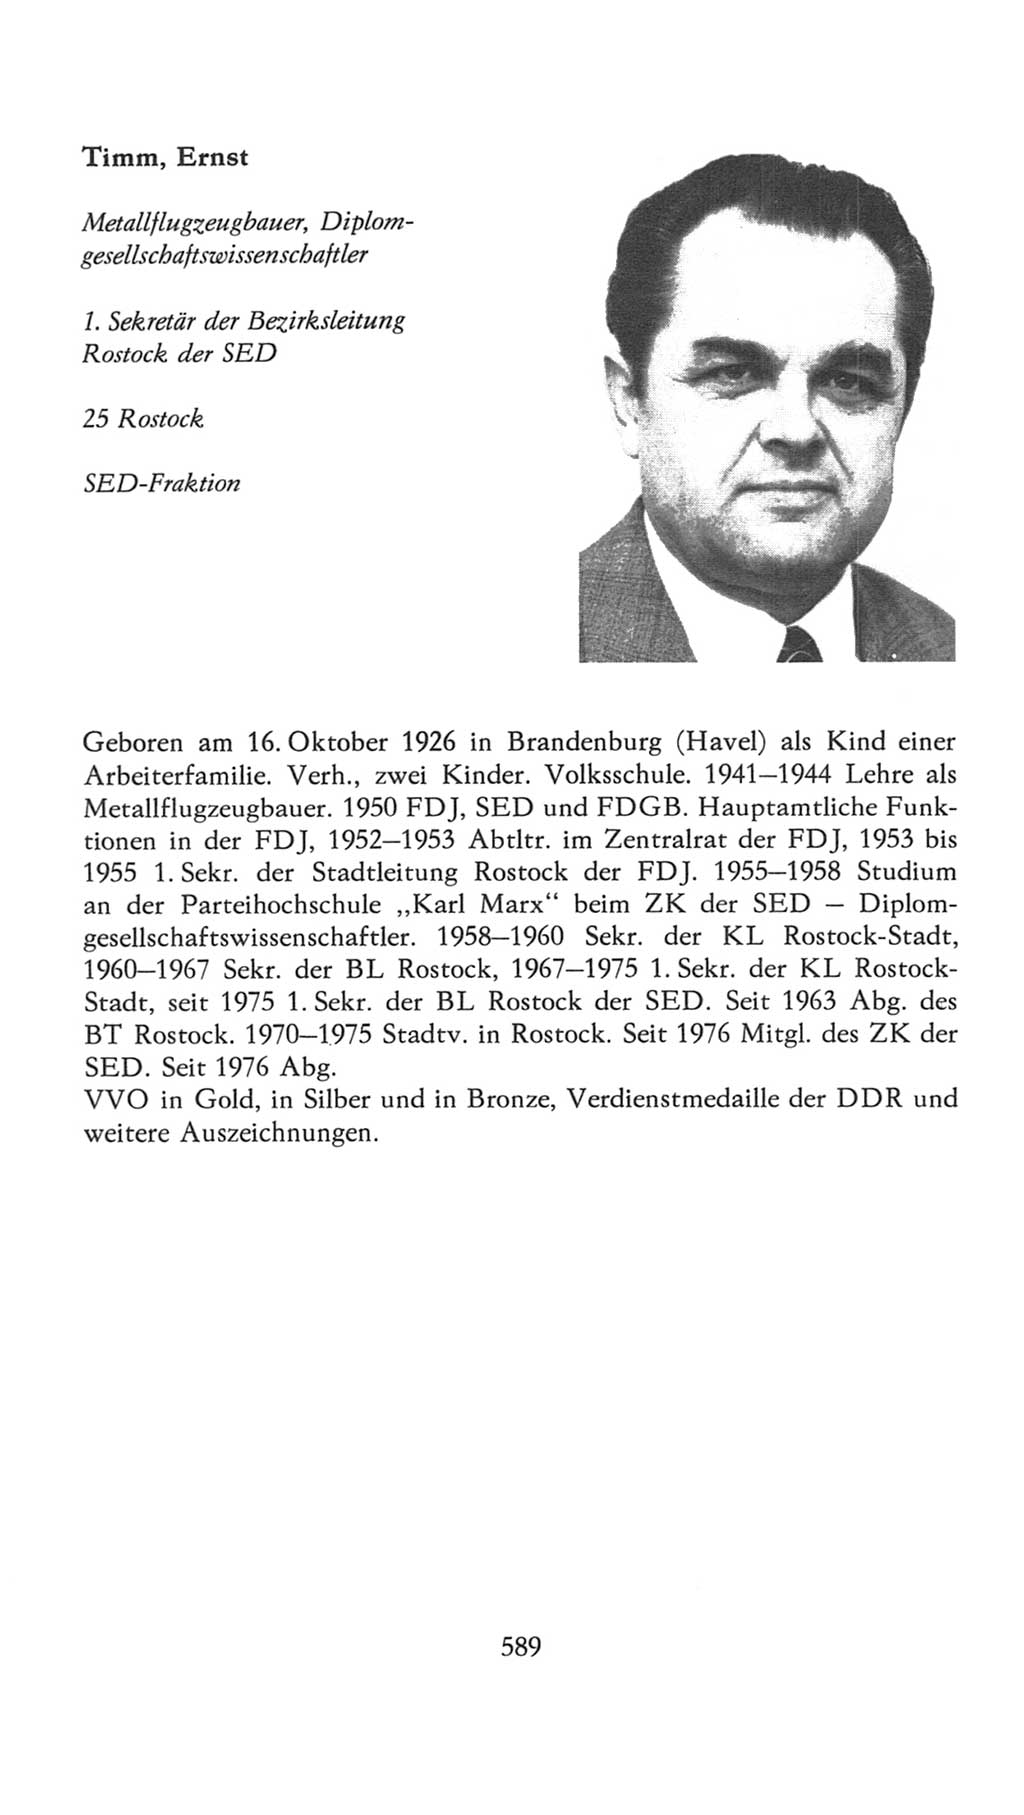 Volkskammer (VK) der Deutschen Demokratischen Republik (DDR), 7. Wahlperiode 1976-1981, Seite 589 (VK. DDR 7. WP. 1976-1981, S. 589)